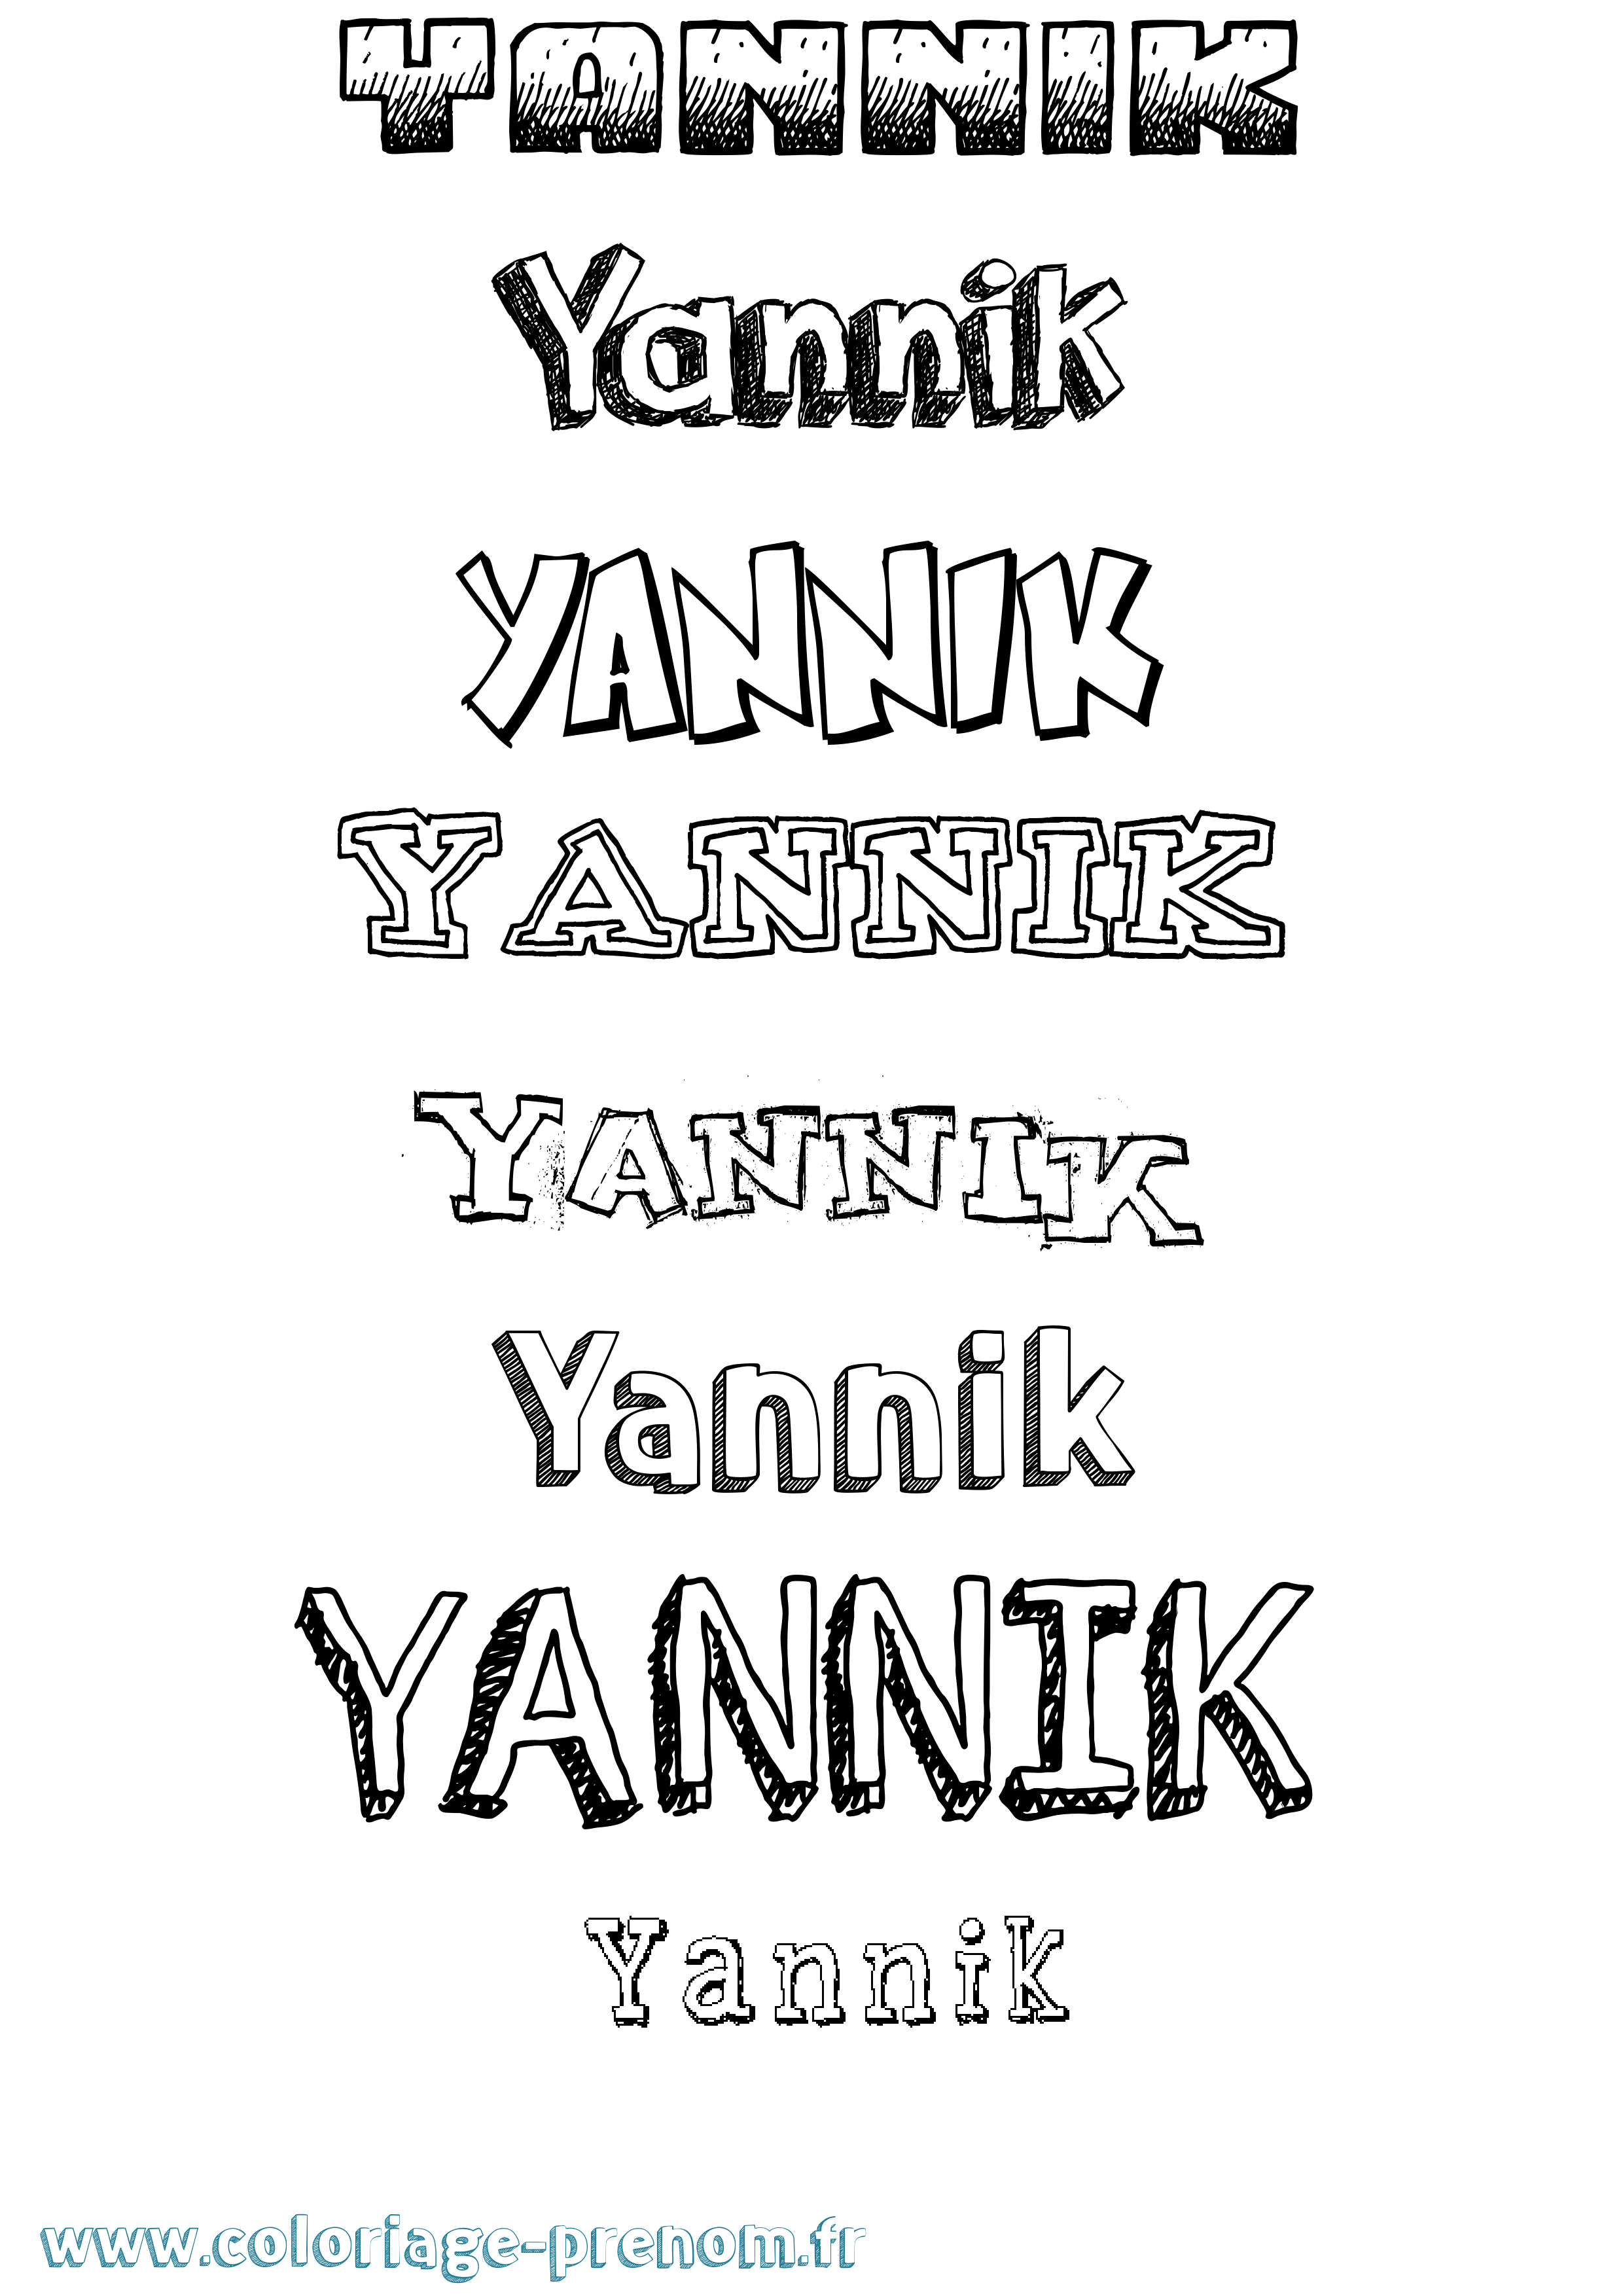 Coloriage prénom Yannik Dessiné